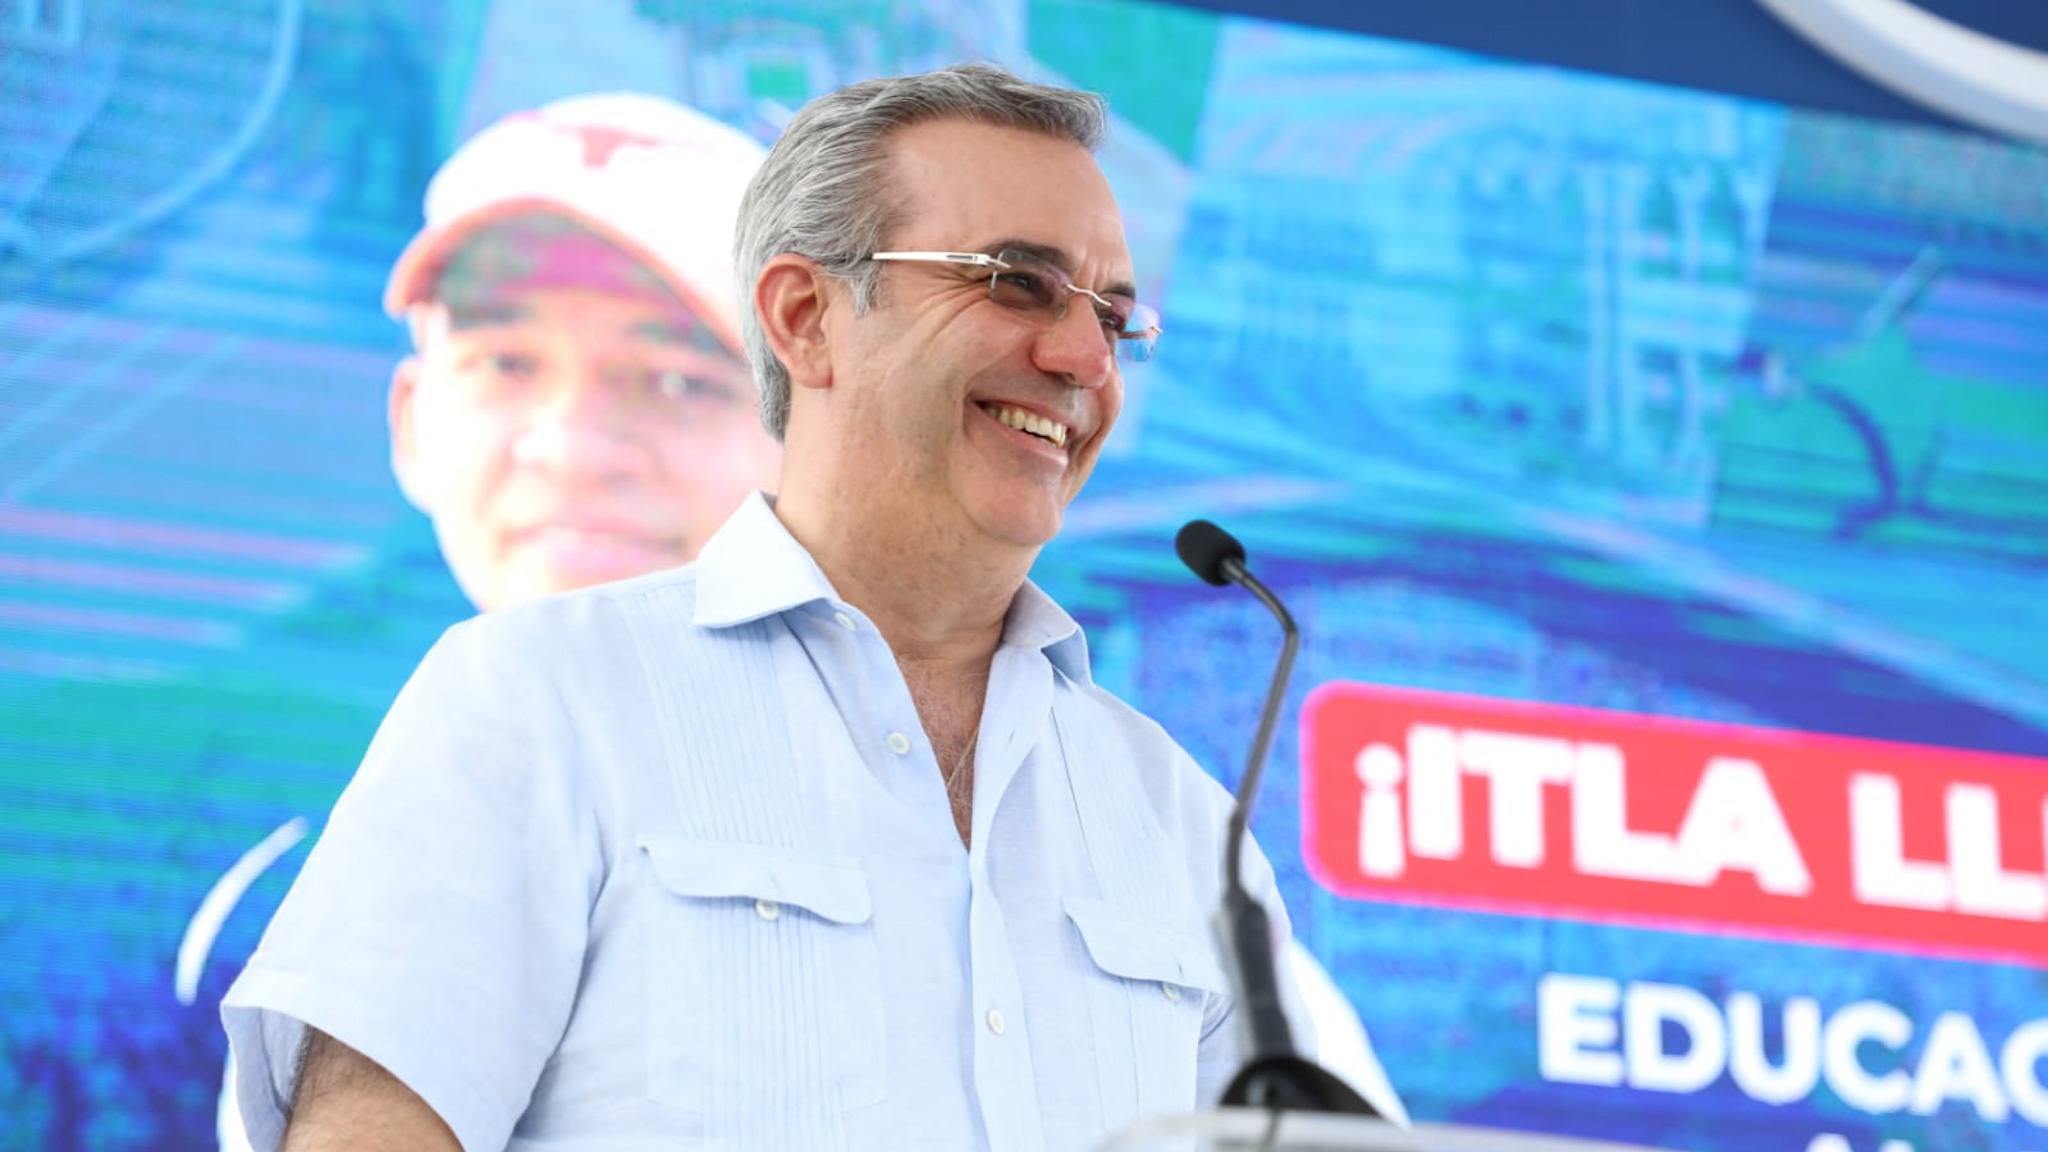 REPÚBLICA DOMINICANA: Presidente Abinader anuncia a finales del próximo año el ITLA estará en 12 demarcaciones